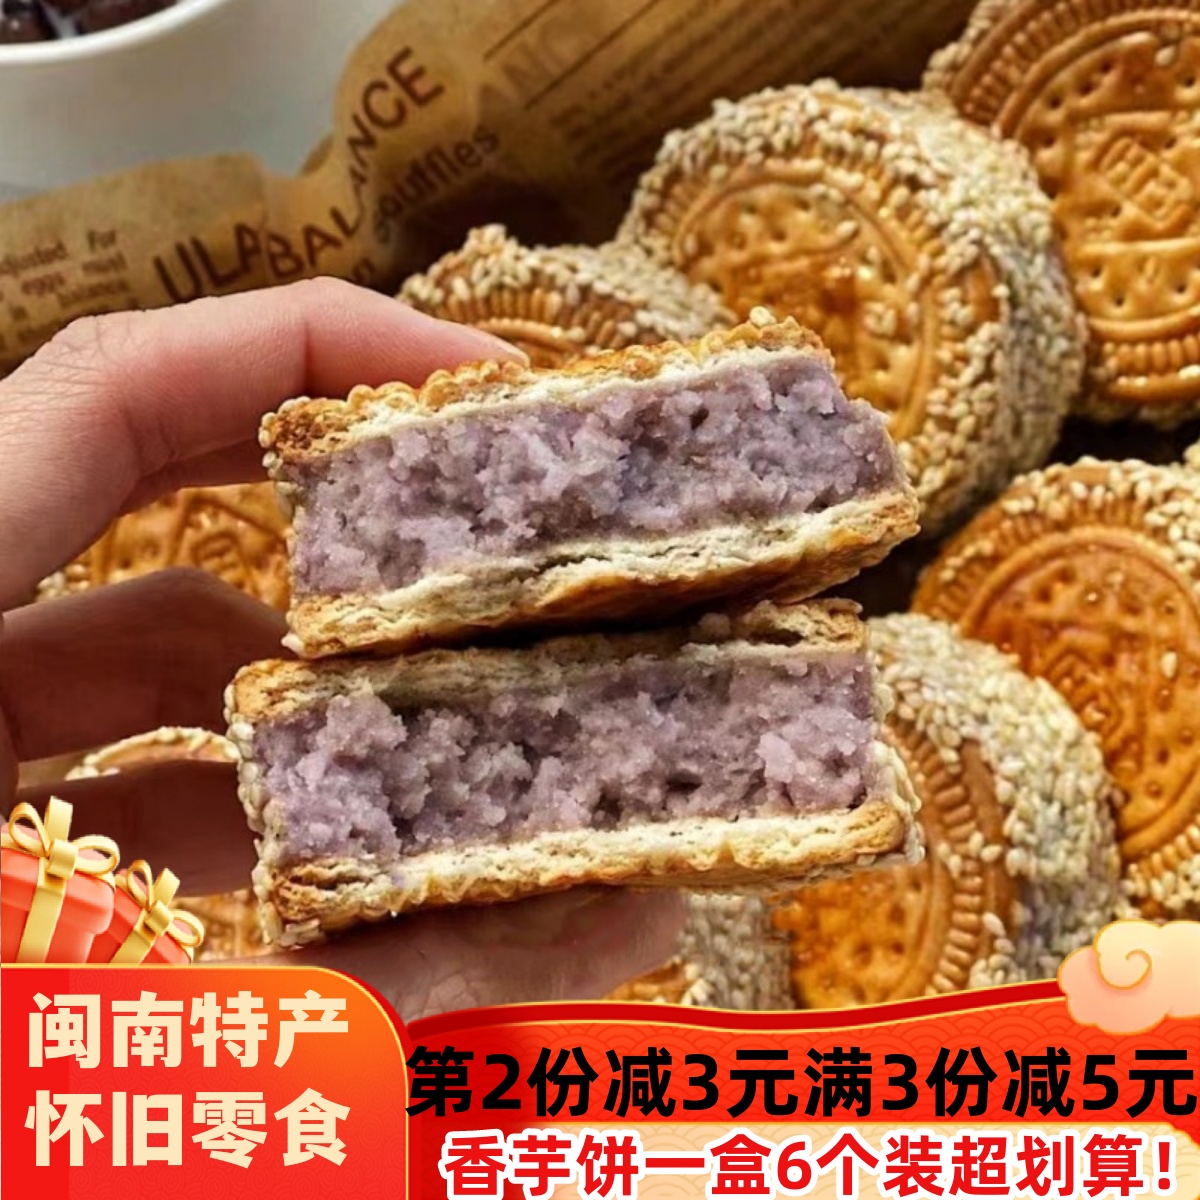 芋头饼芝麻香芋饼福建闽南特产饼干夹心芋泥饼茶点传统手工糕点